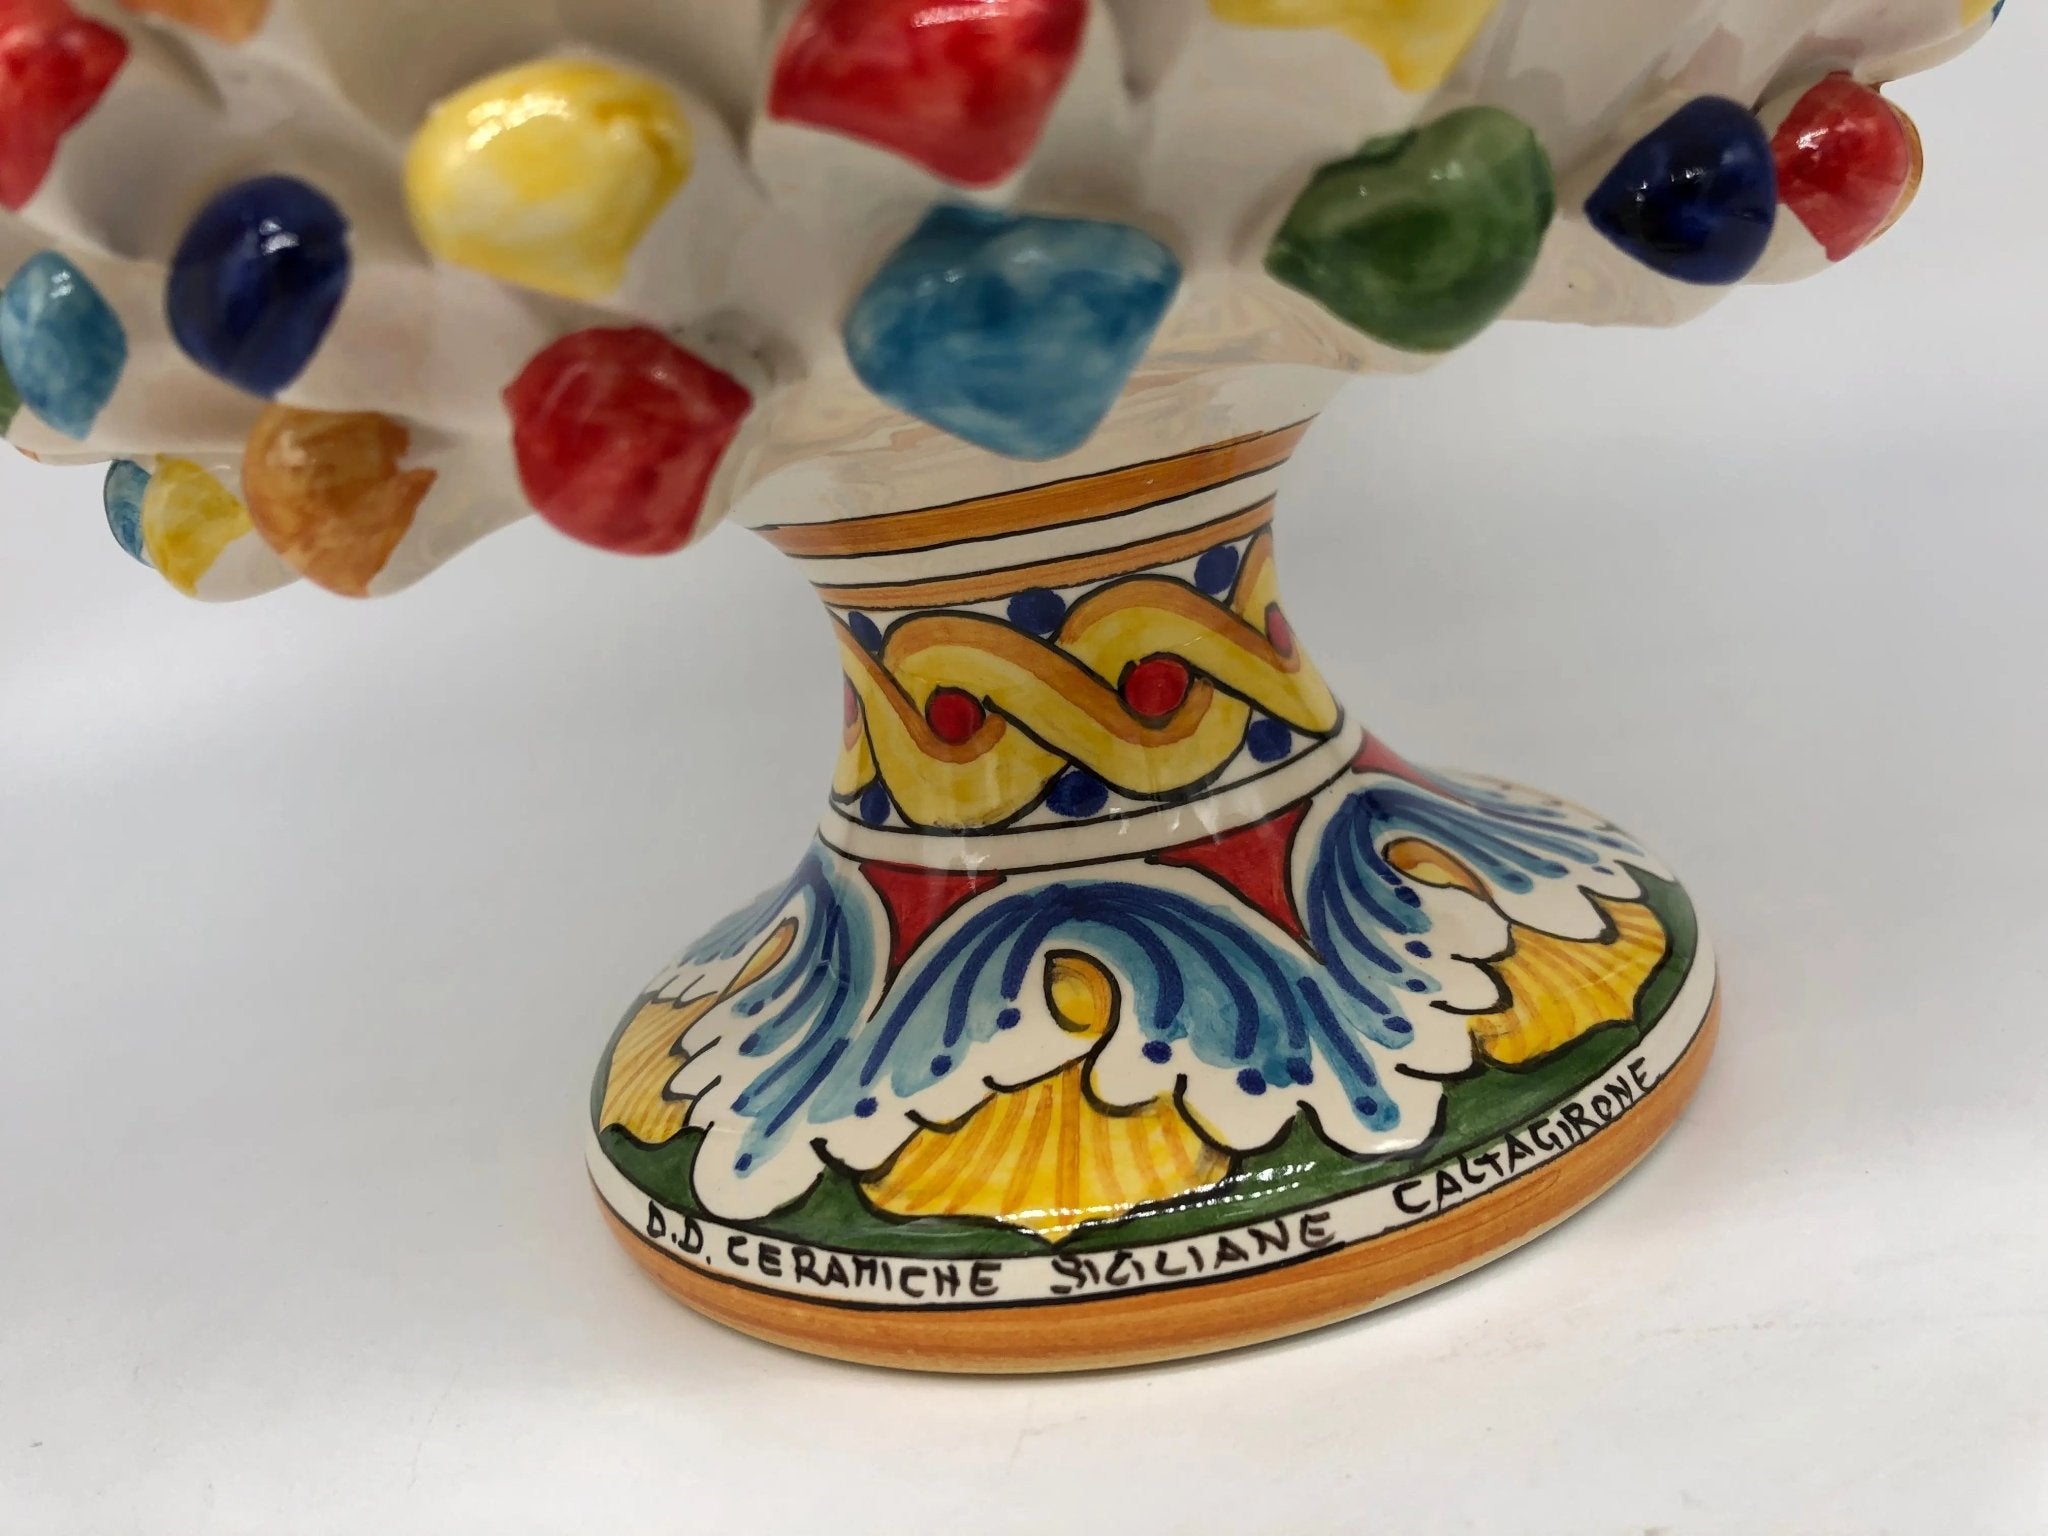 Portavaso mezza pigna ceramica di caltagirone cm h.20 l.20 artigianale  multicolore